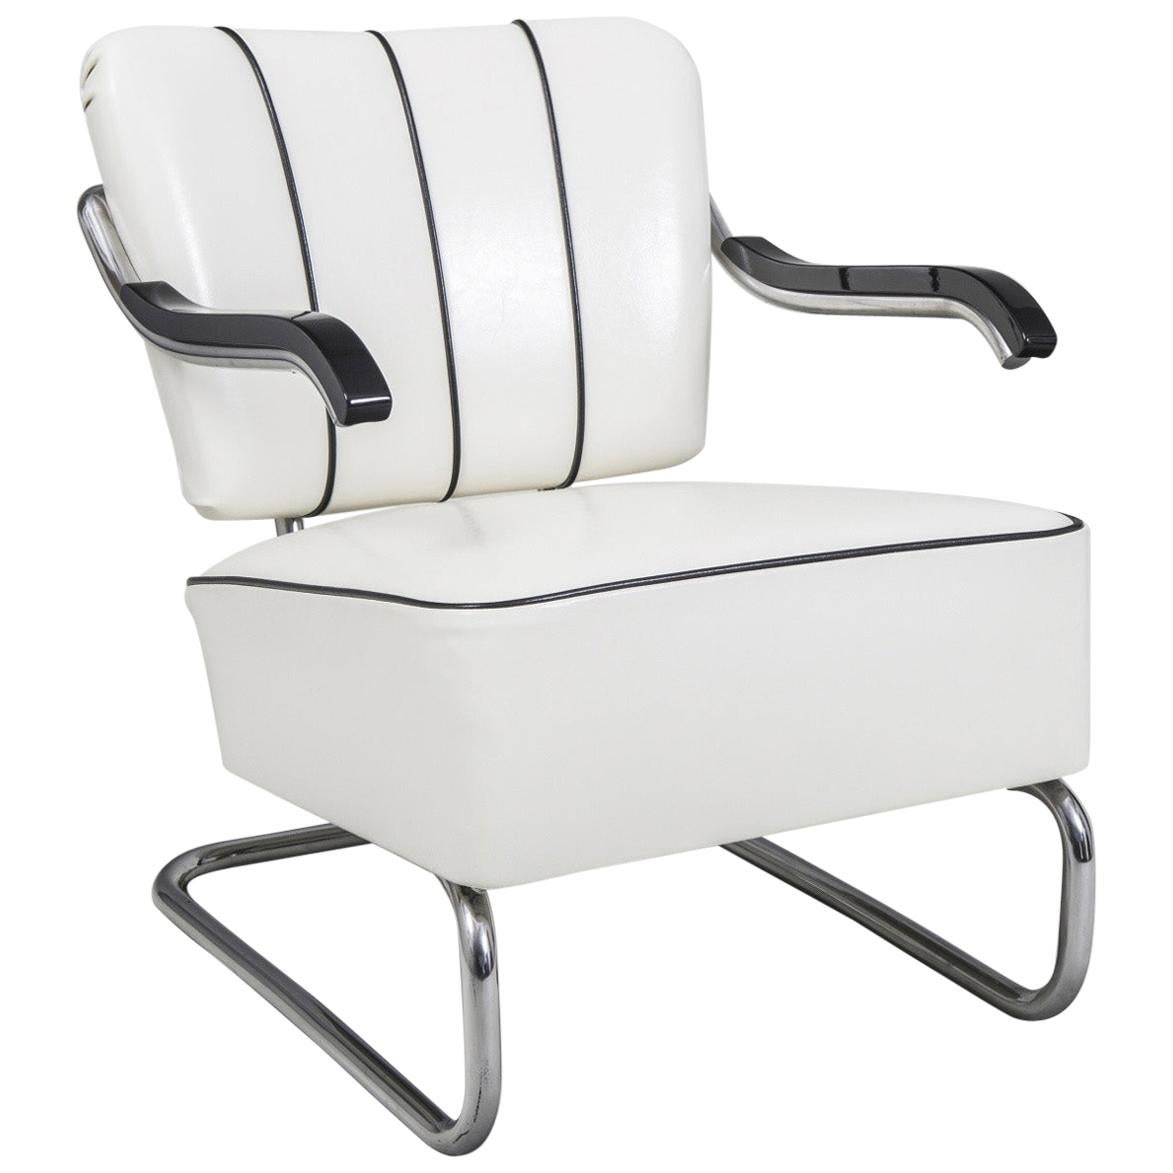 Tubular Chrom Cantilever Armchair by Mücke-Melder, White Leather, New Upholstery